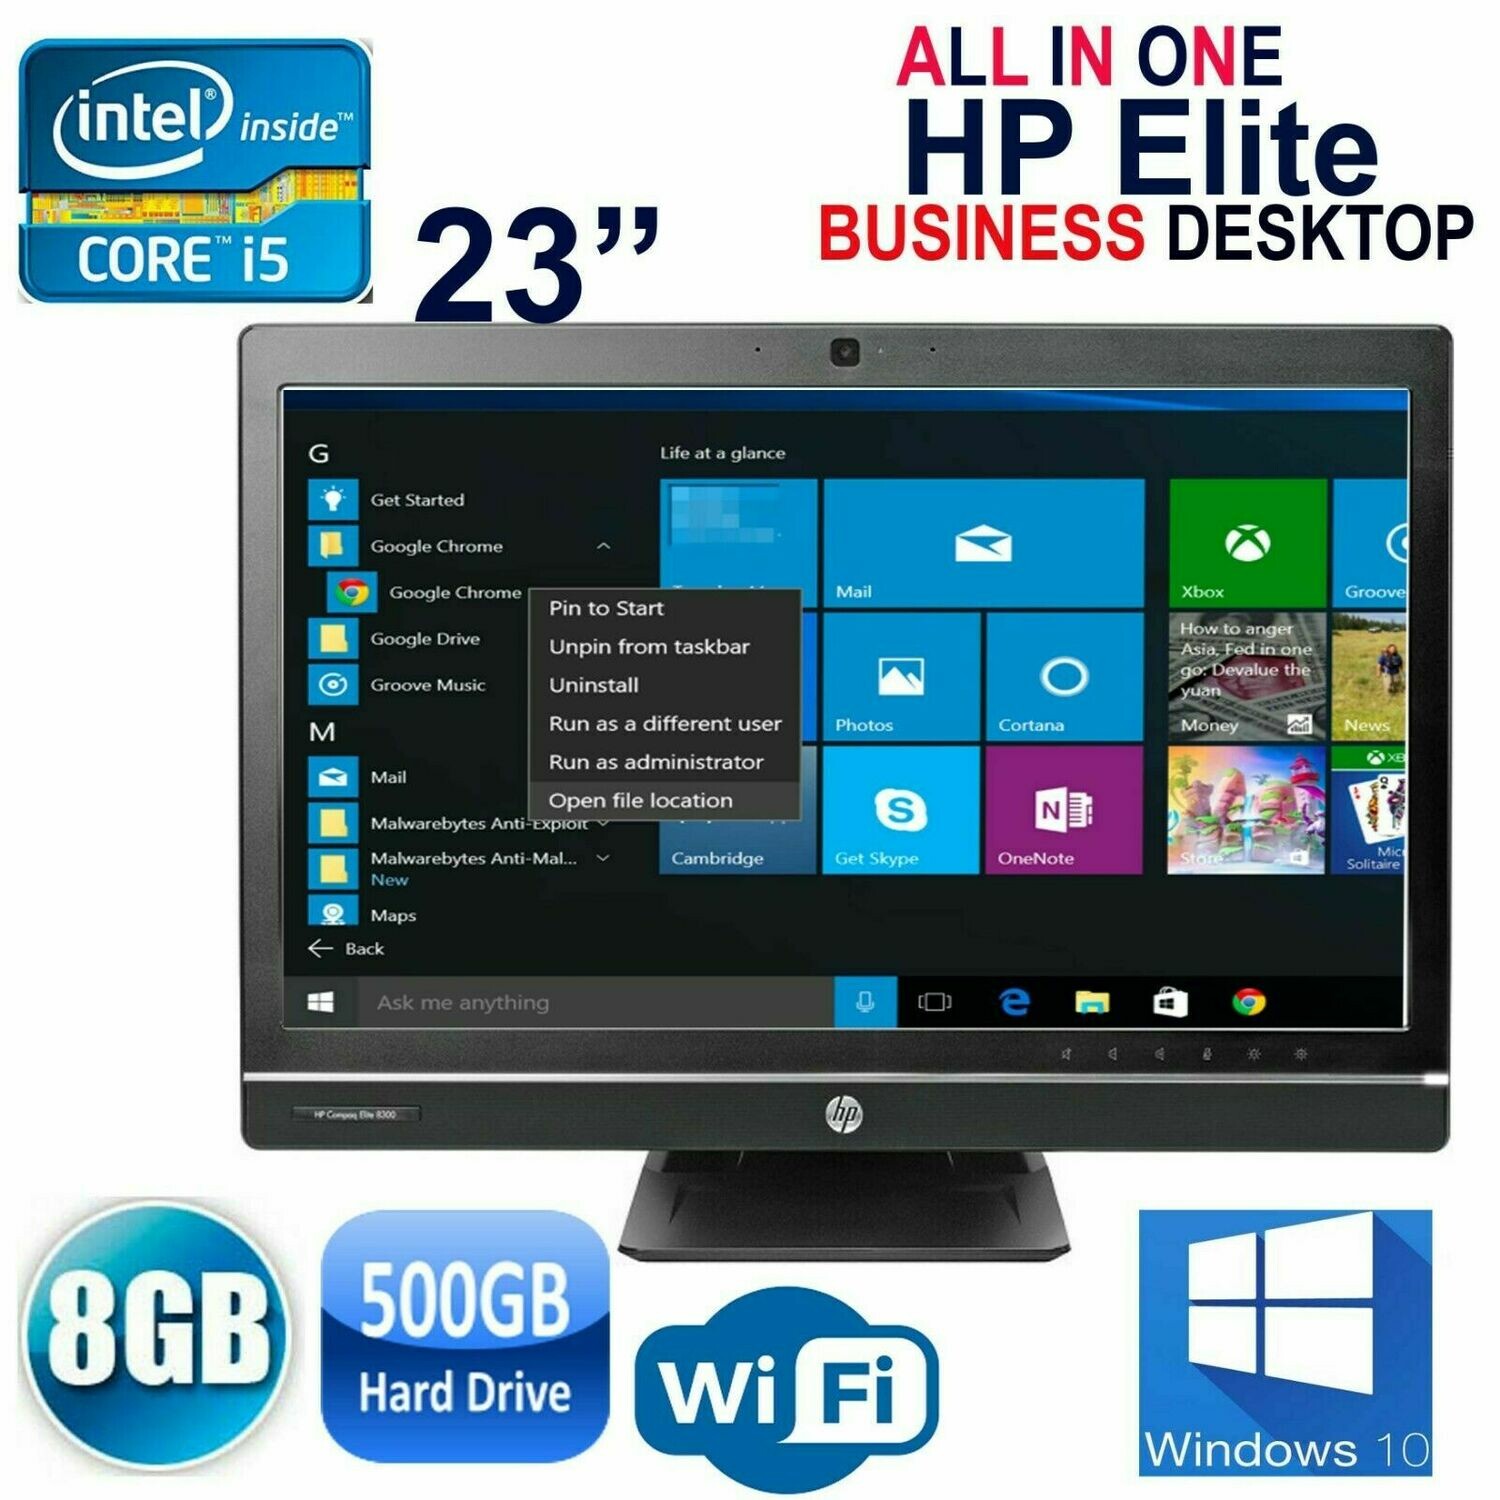 HP Compaq Elite 8300 23" AIO All In One Computer Core i5 8GB 500GB 2.67GHz WiFi Win10 PRO